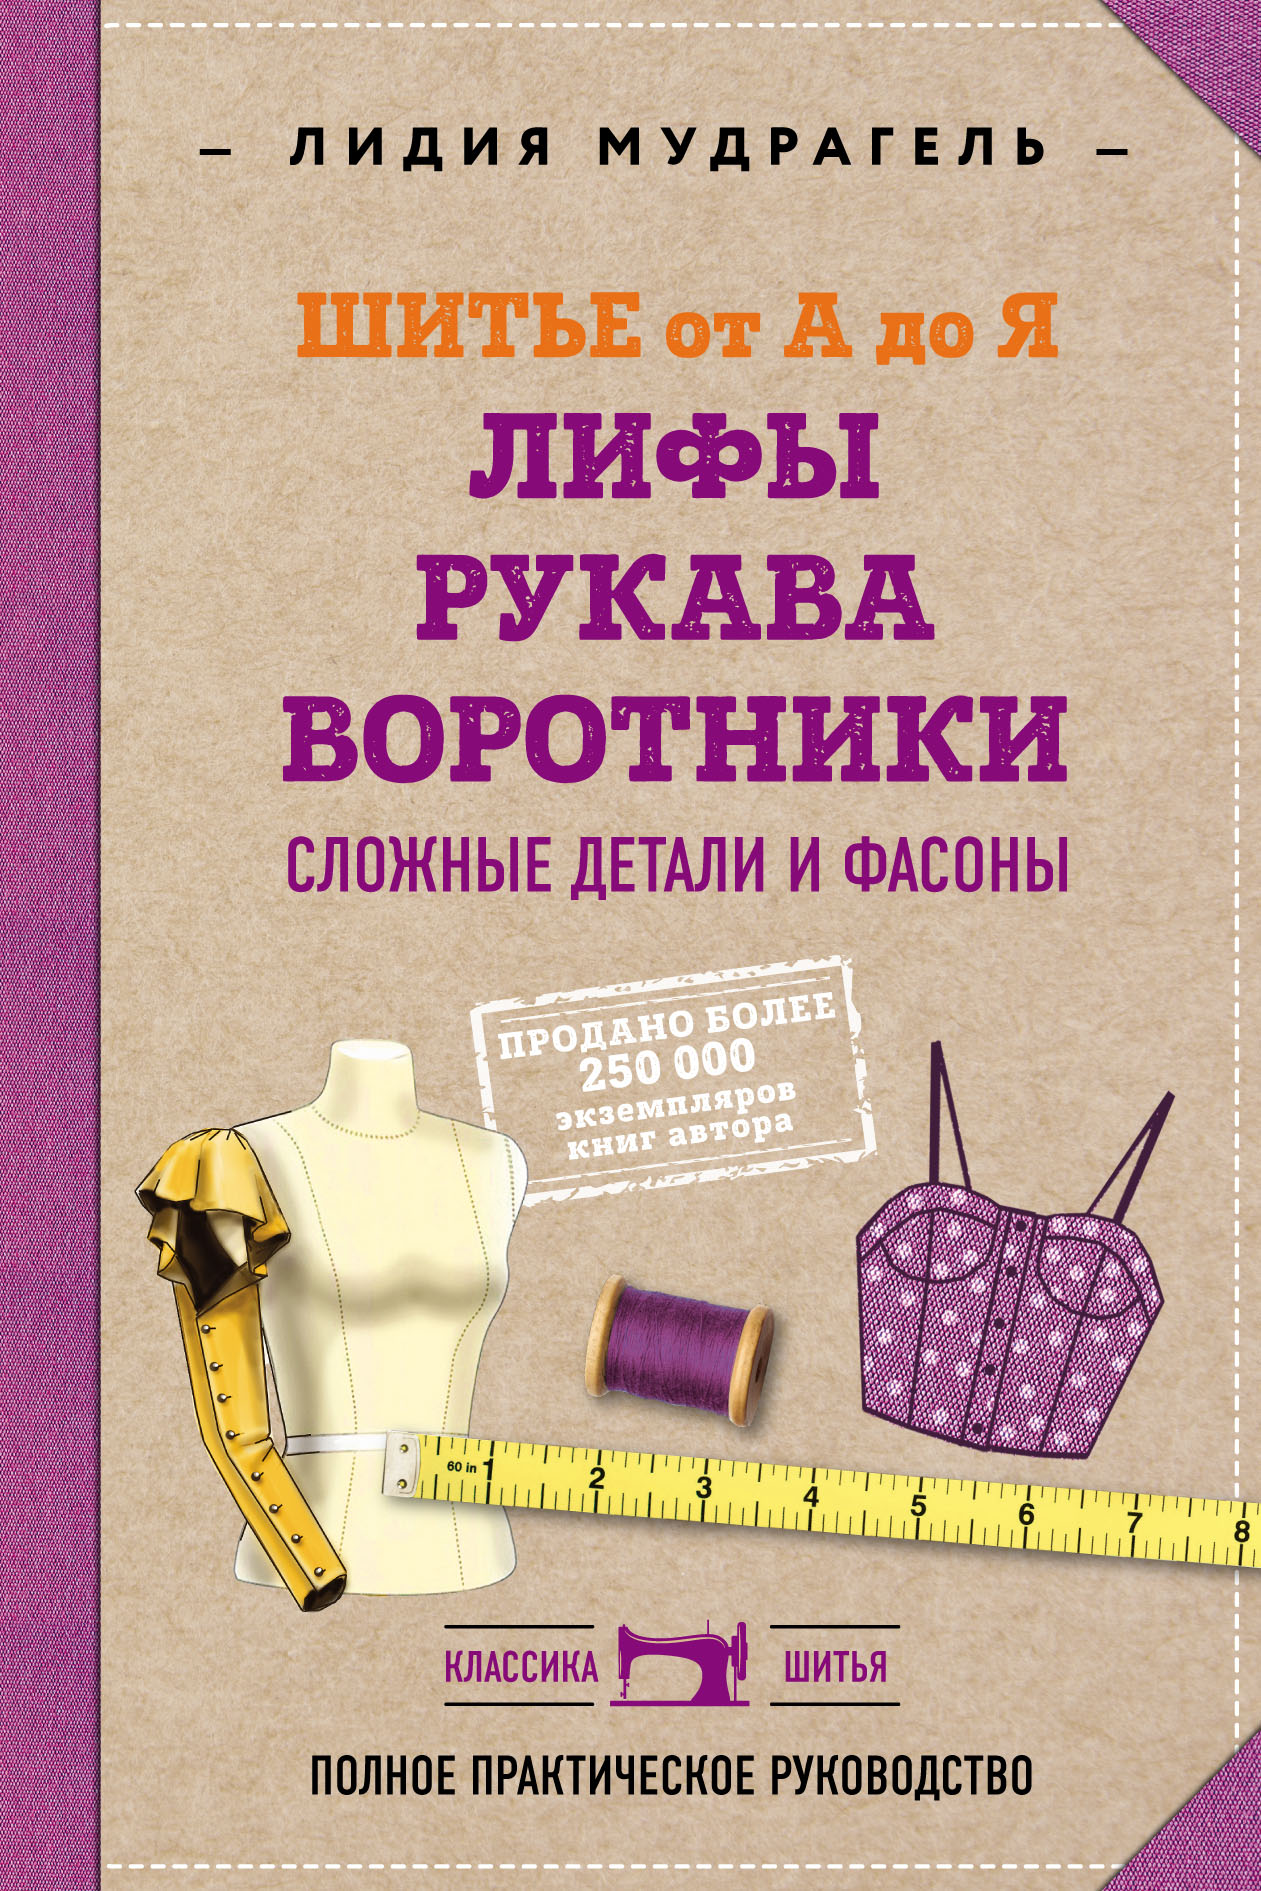 Курсы кройки и шитья в СПб для начинающих: пошив одежды, обучение у лучших швей